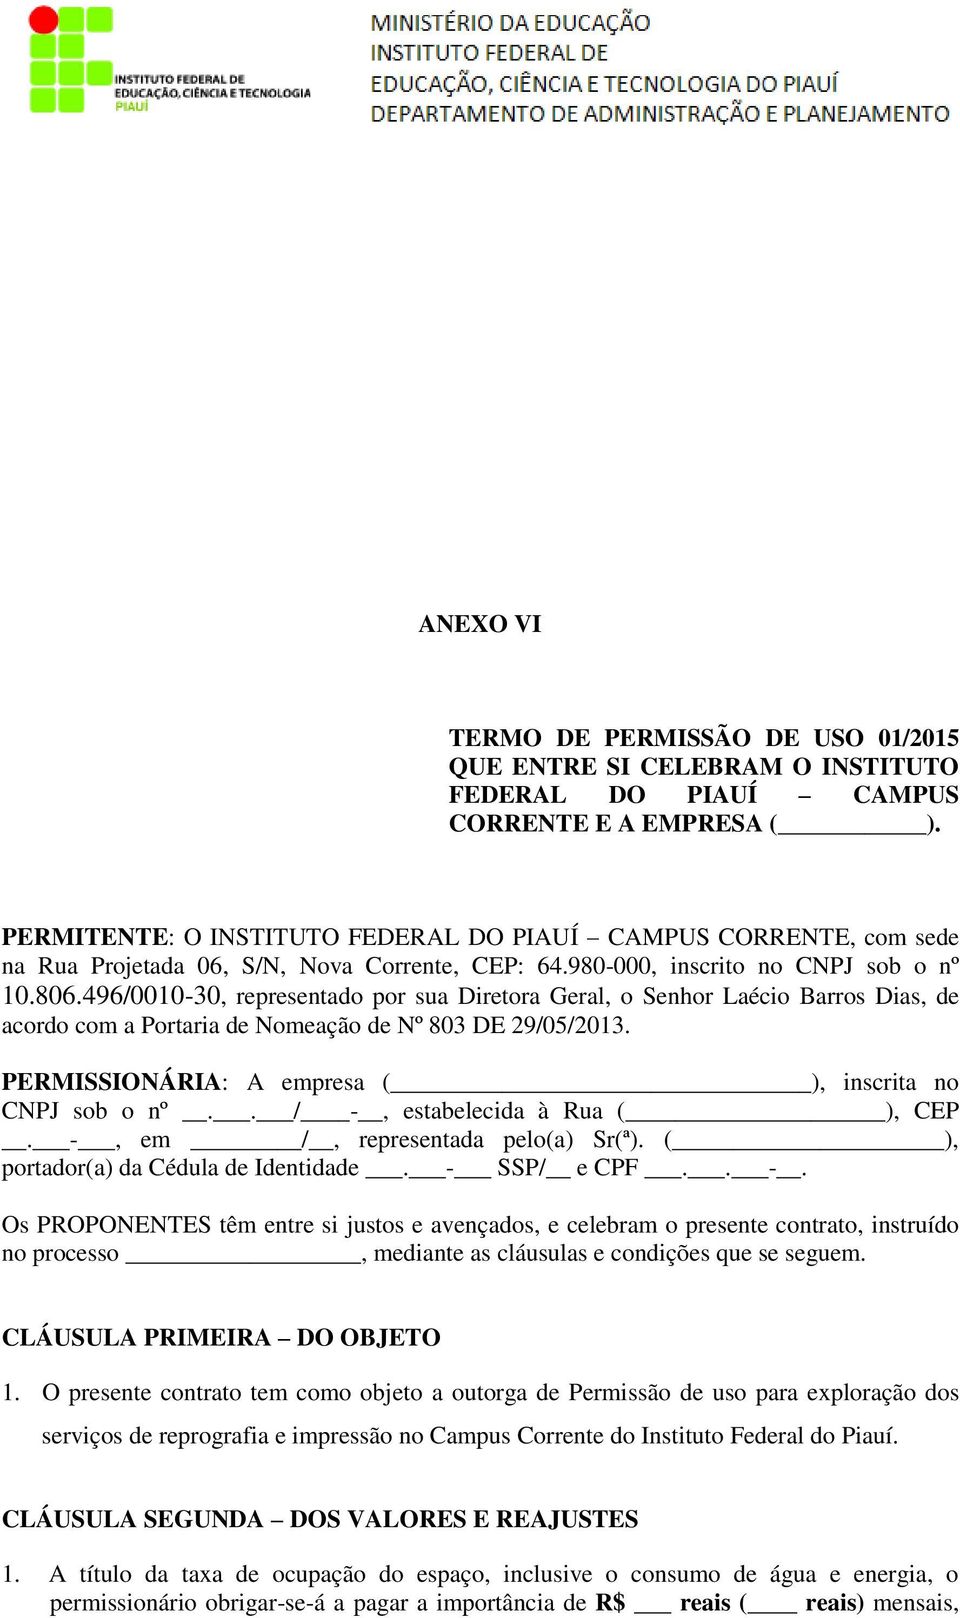 496/0010-30, representado por sua Diretora Geral, o Senhor Laécio Barros Dias, de acordo com a Portaria de Nomeação de Nº 803 DE 29/05/2013. PERMISSIONÁRIA: A empresa ( ), inscrita no CNPJ sob o nº.